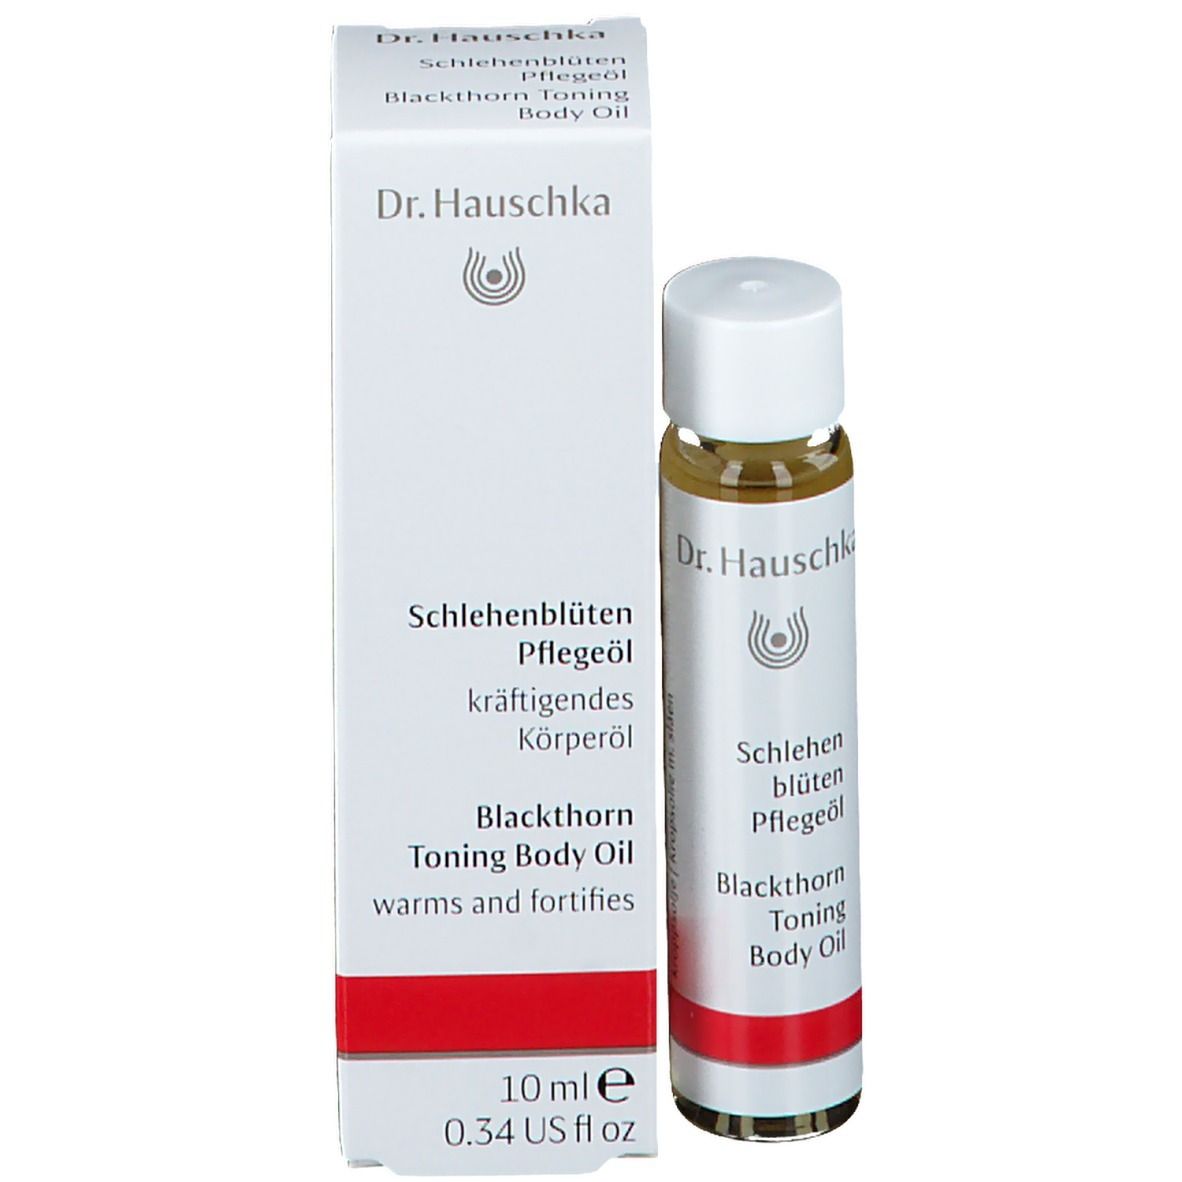 Dr. Hauschka® Schlehenblüten Pflegeöl Probiergröße